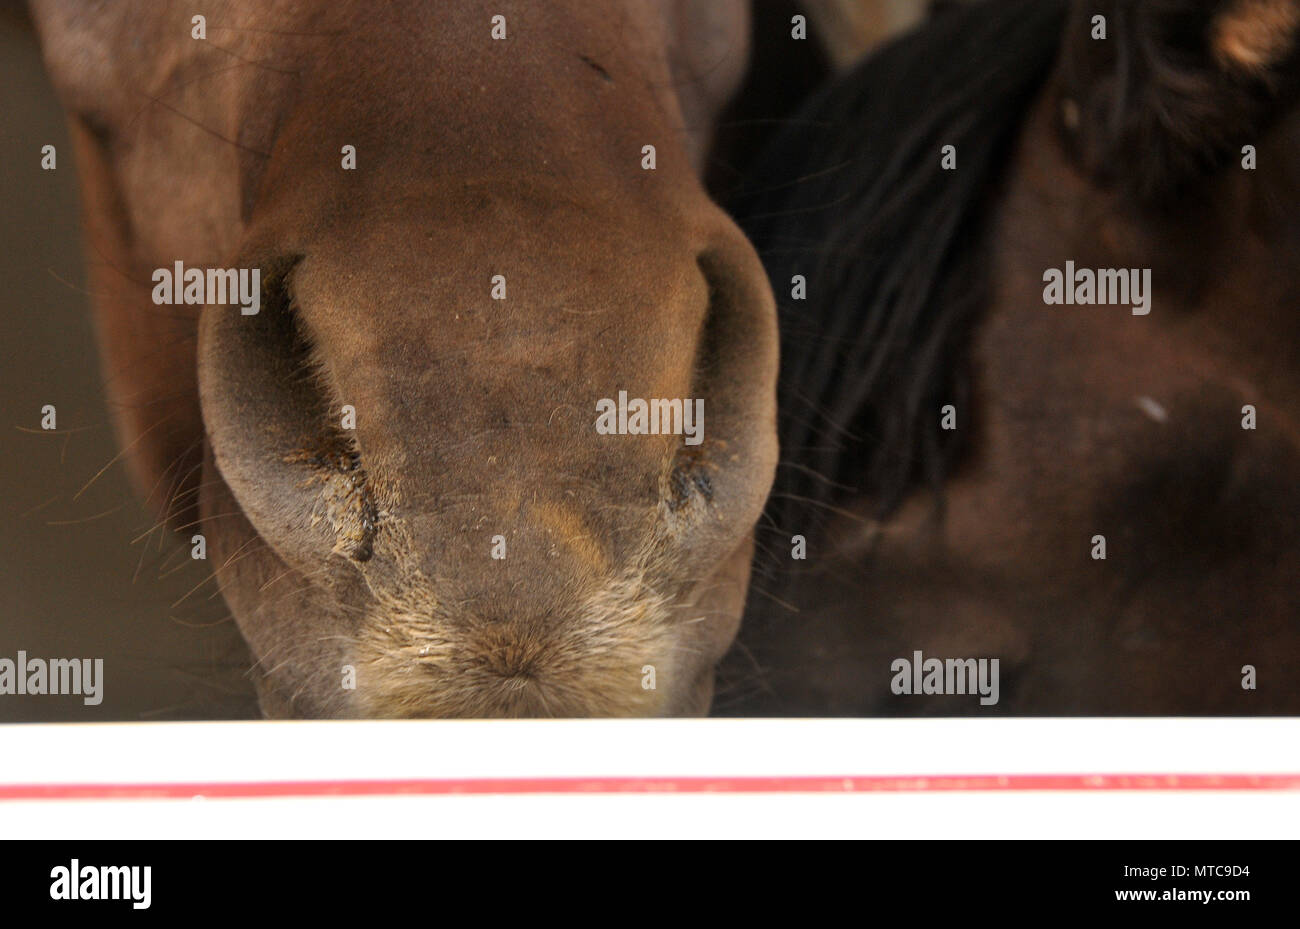 Quattro stalloni selvatici che sono spagnolo cavalli selvaggi, sono stati liberati dalle voci Equine Rescue & Santuario, Green Valley, Arizona, Stati Uniti. I cavalli erano trans Foto Stock